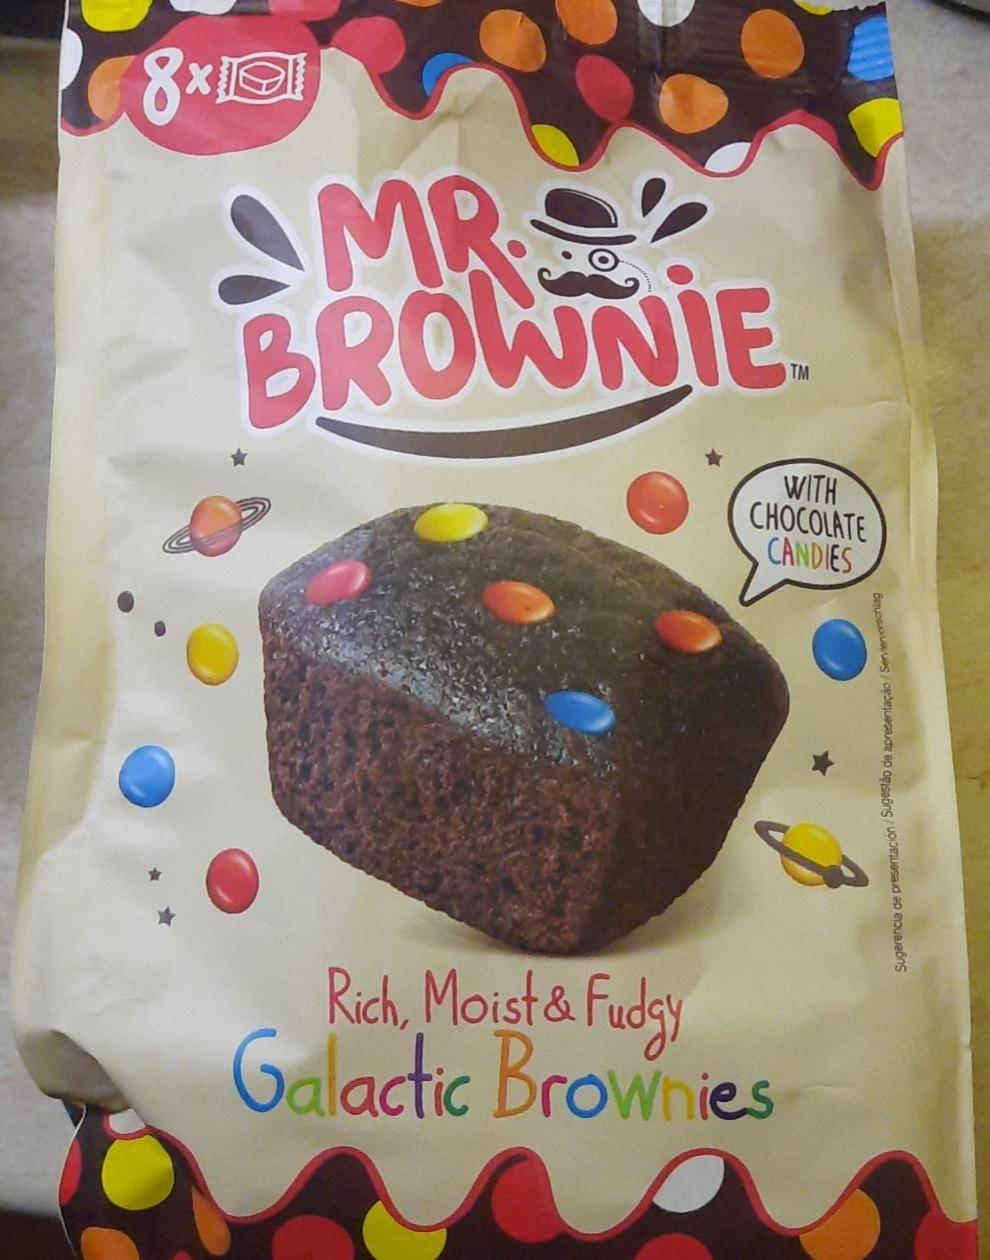 Fotografie - Galactic Brownies Mr. Brownie